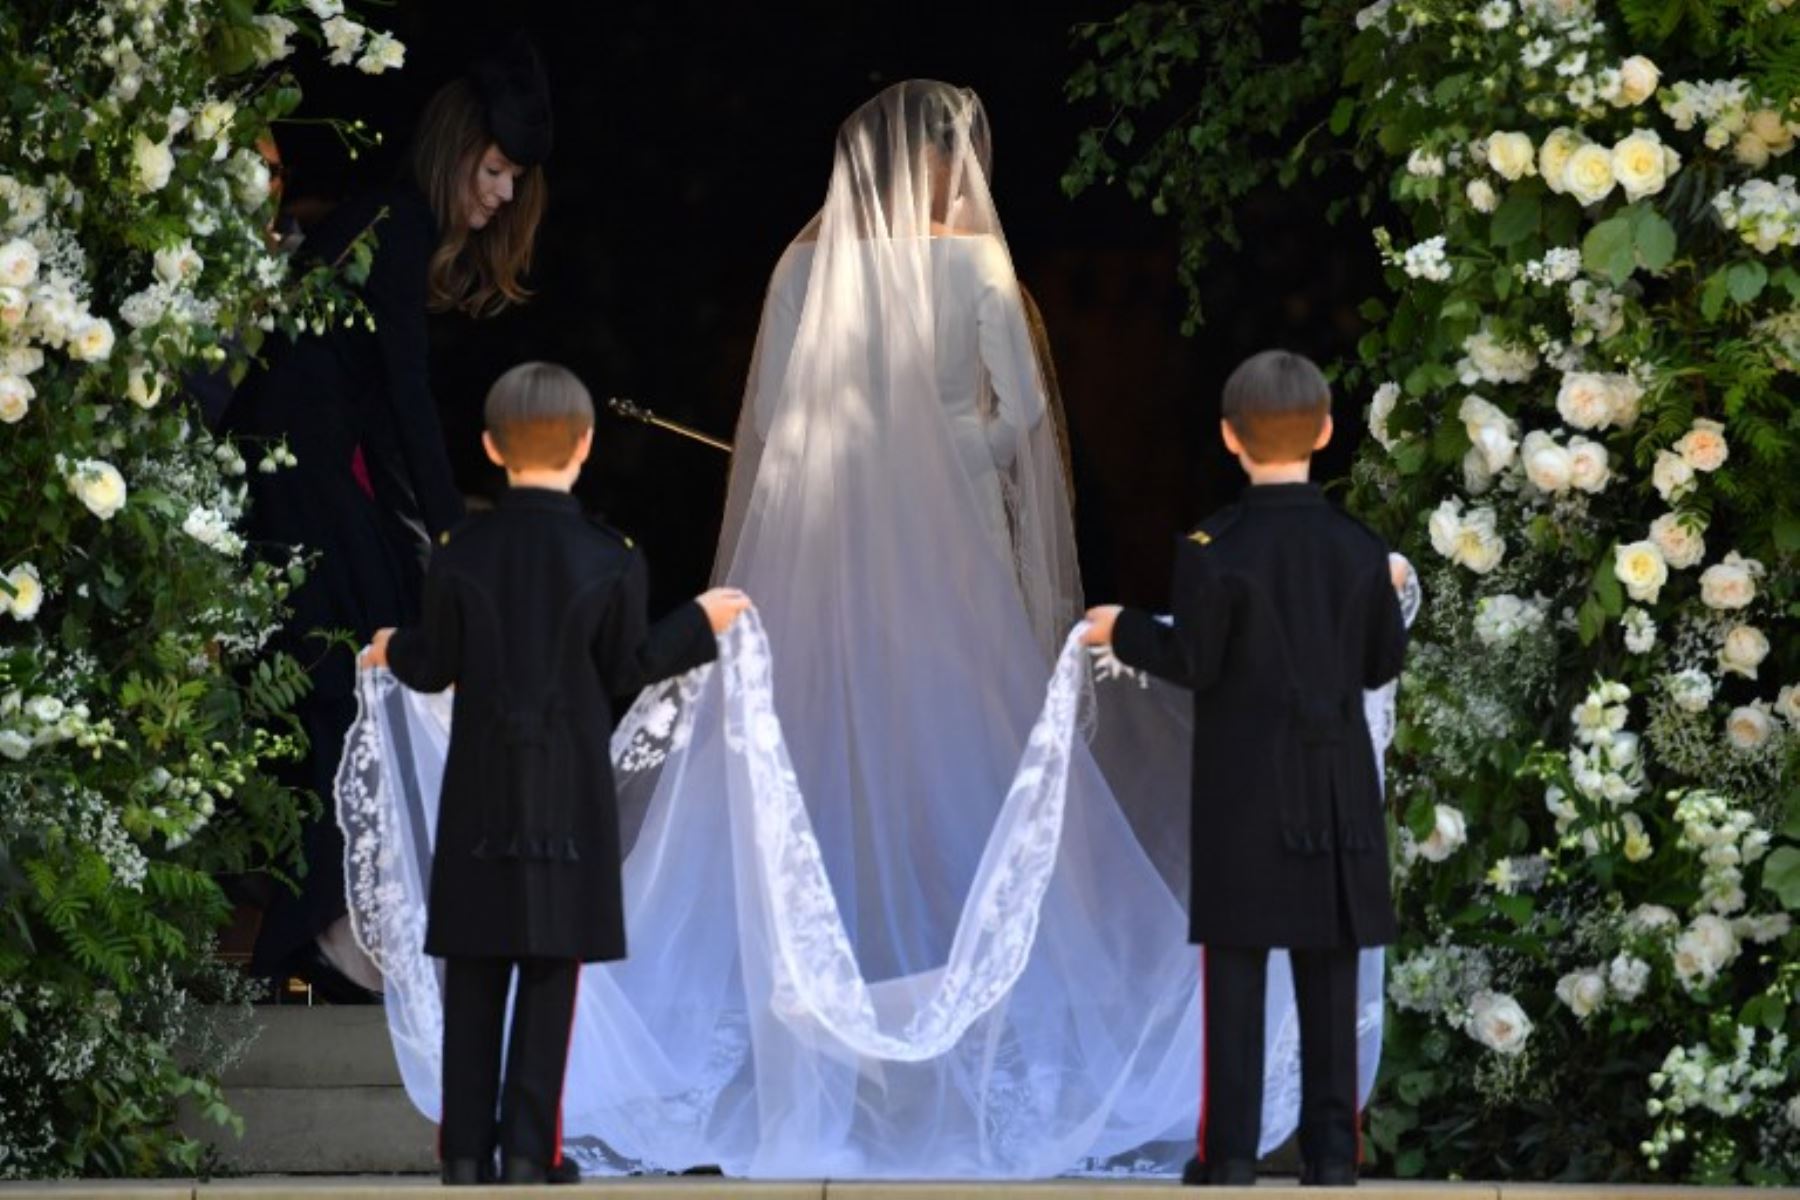 La actriz Meghan Markle llega a la ceremonia nupcial para casarse con el príncipe Harry, Duque de Sussex, de Gran Bretaña, en la Capilla de San Jorge, en el Castillo de Windsor.Foto:AFP